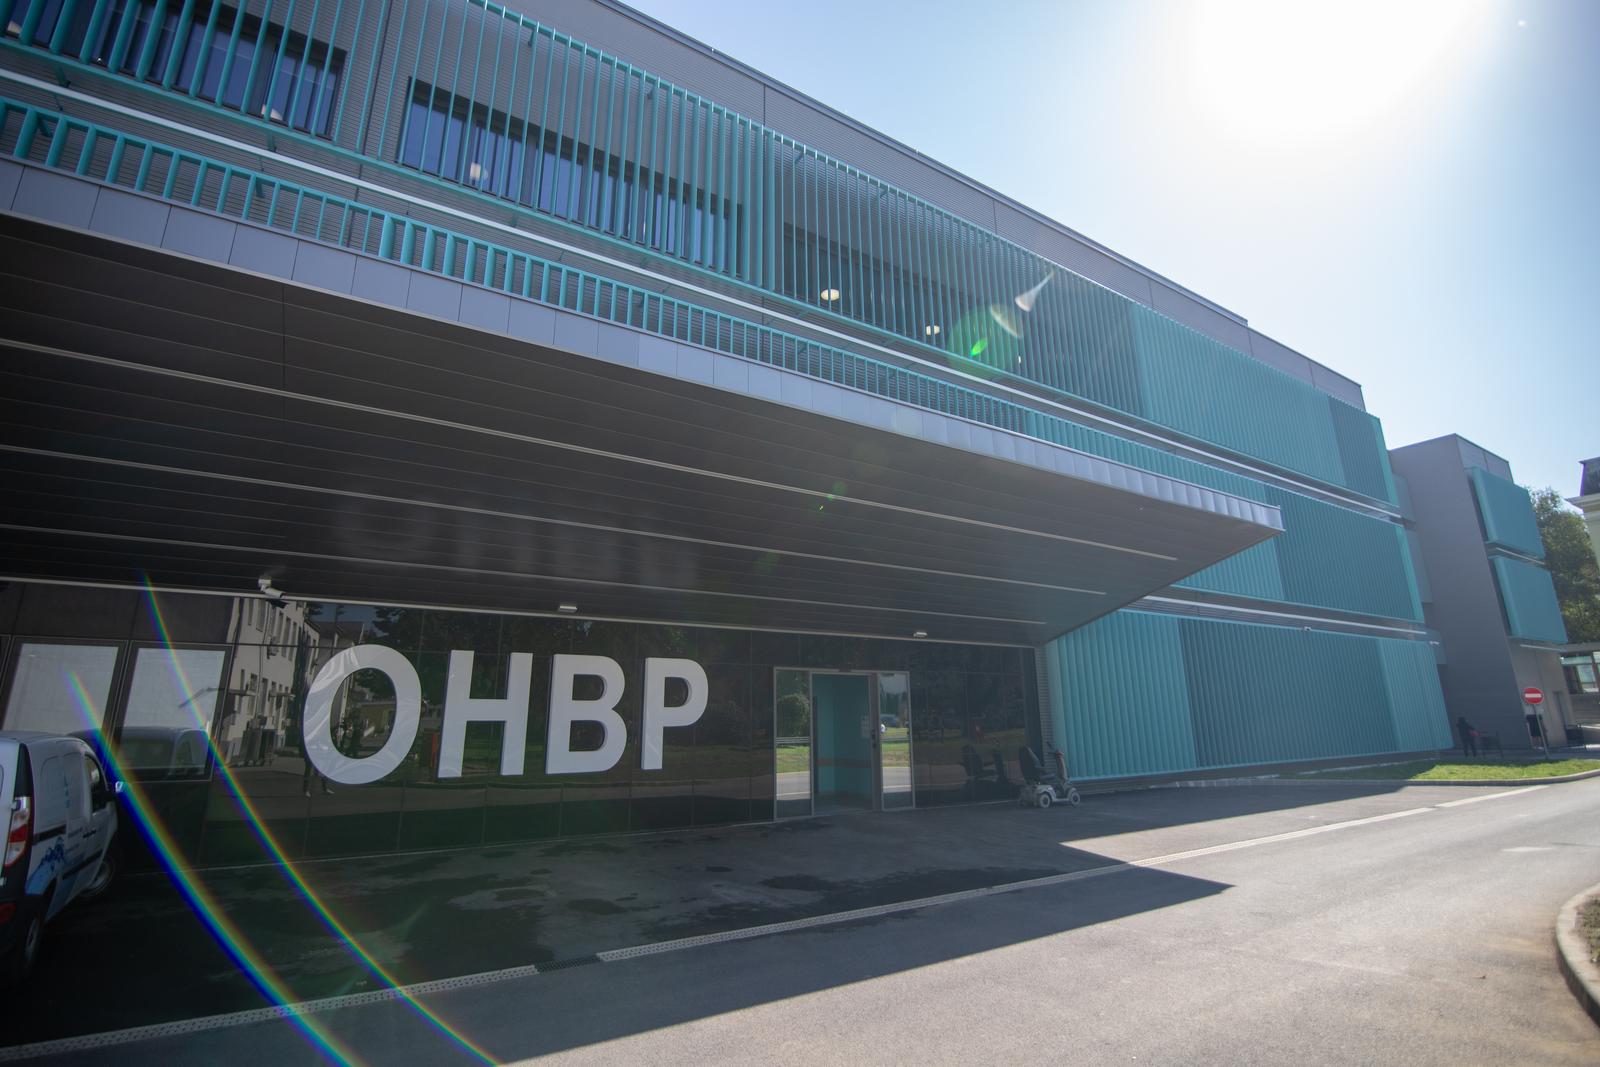 27.09.2022., Osijek - Objedinjeni hitni bolnicki prijam zapoceo s radom u prozemlju novog objekta OHBP-a. Suvremeni prostor OHBP-a opremljen je modernom, sofisticiranom opremom te zadovoljava najvise standarde Photo: Borna Jaksic/PIXSELL